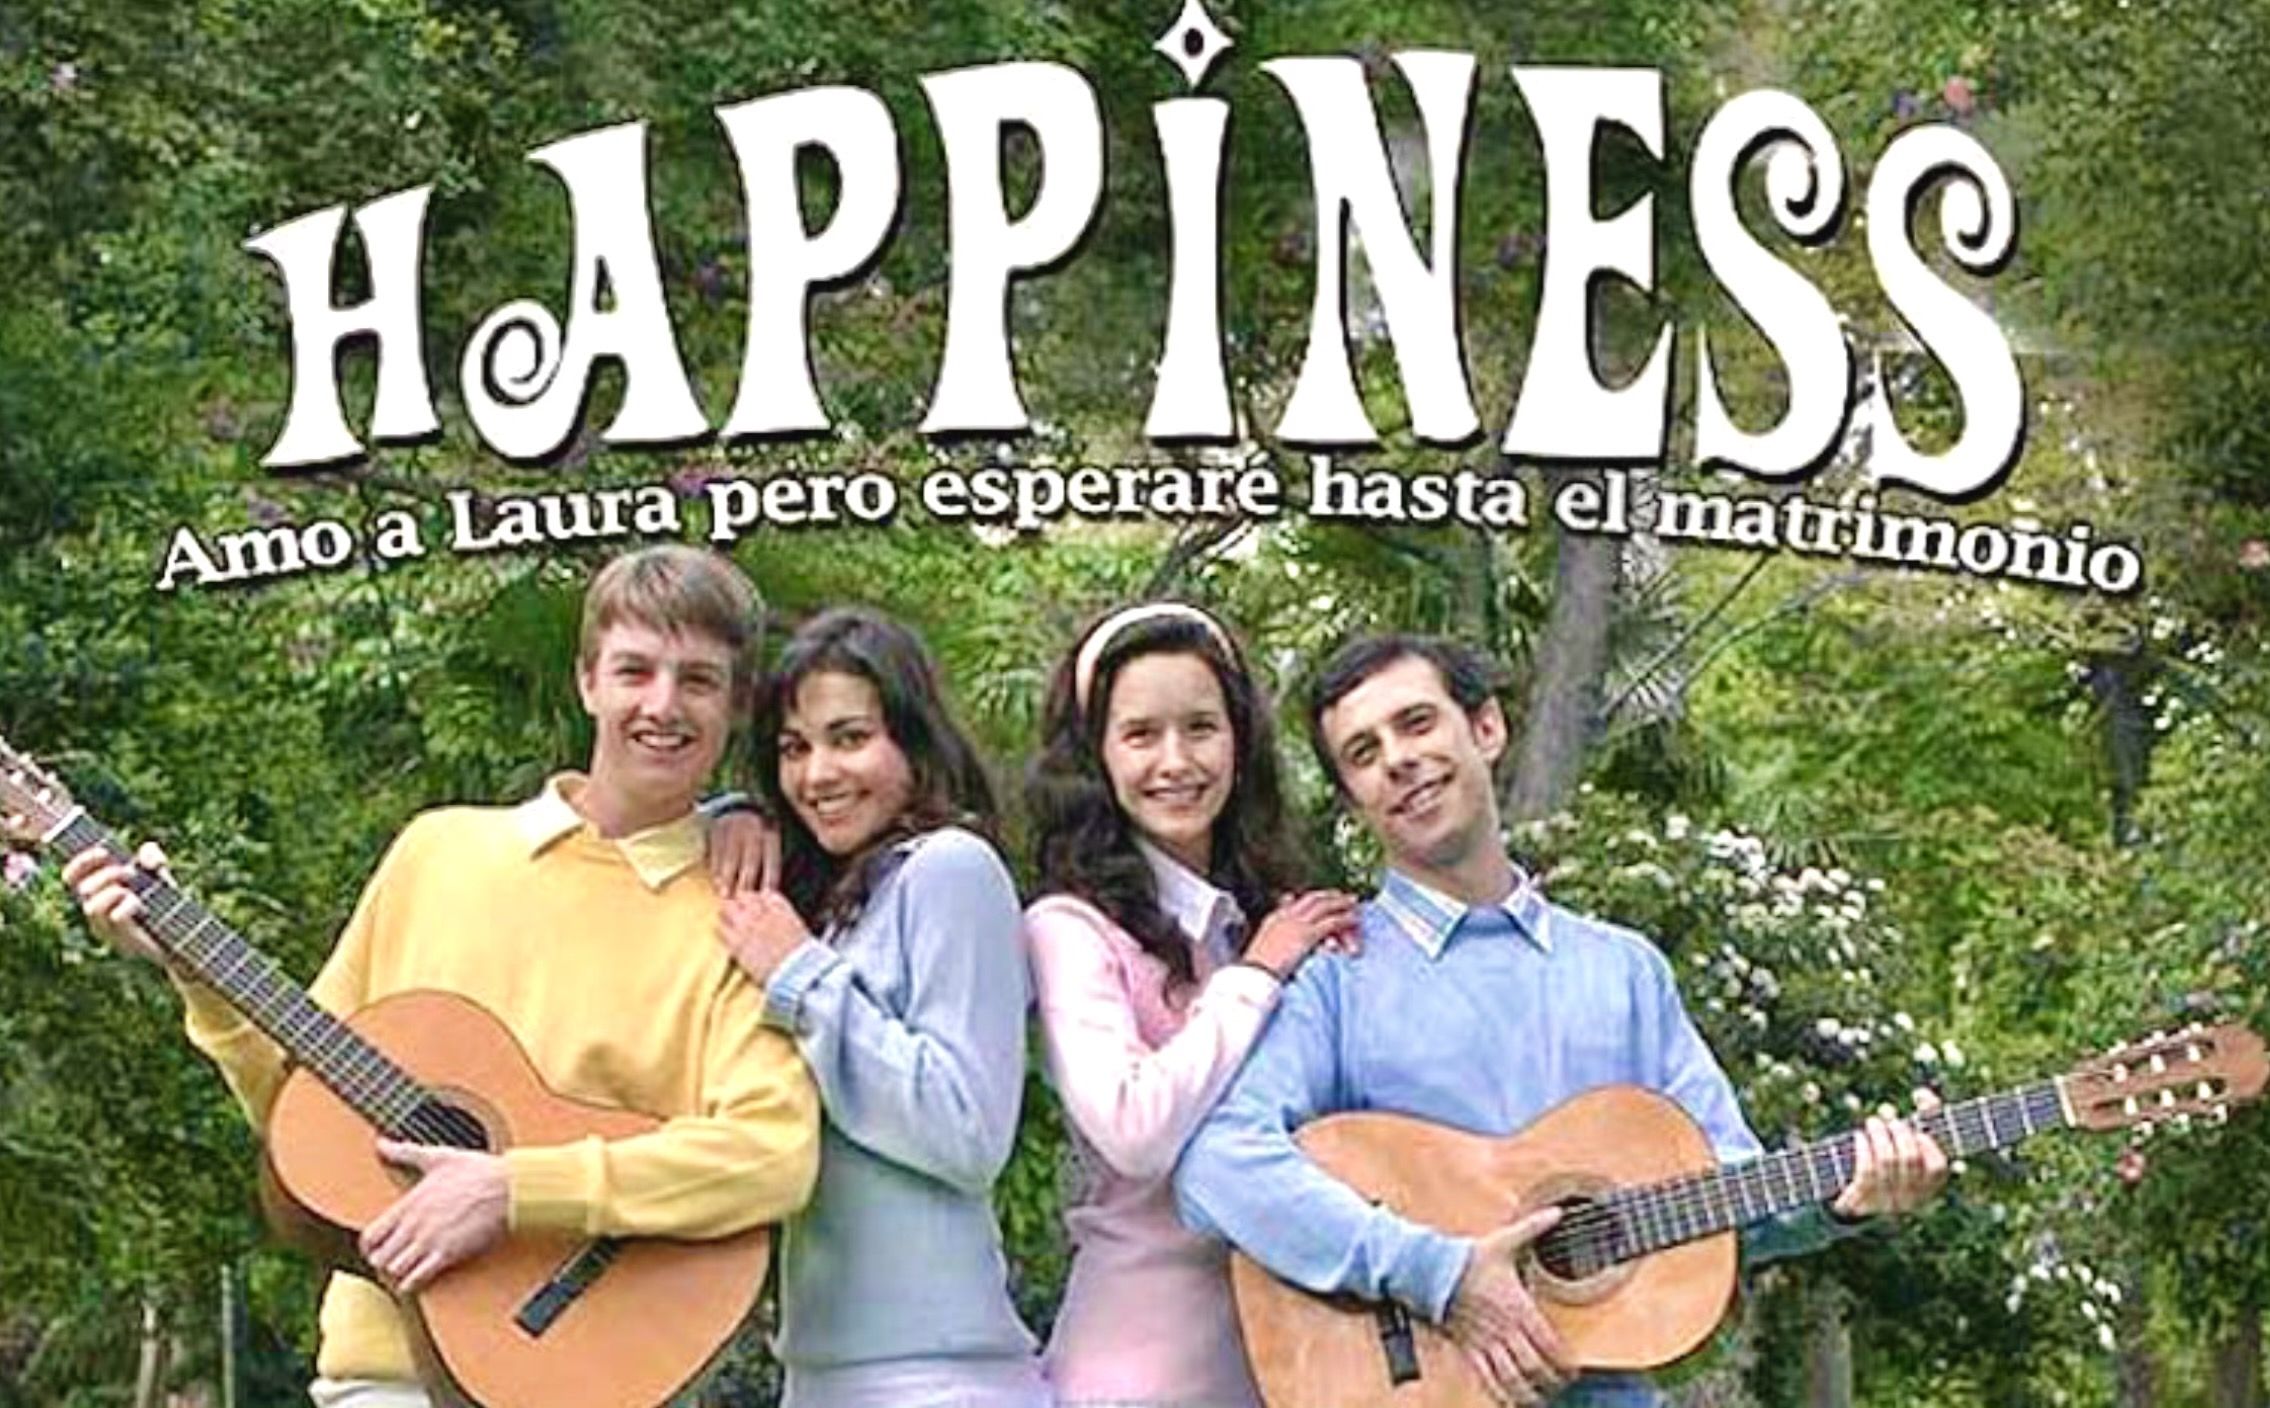 Grupo ficticio de 'Los Happiness' y su single 'Amo a Laura, pero esperaré hasta el matrimonio' con Lara Álvarez (izquierda)